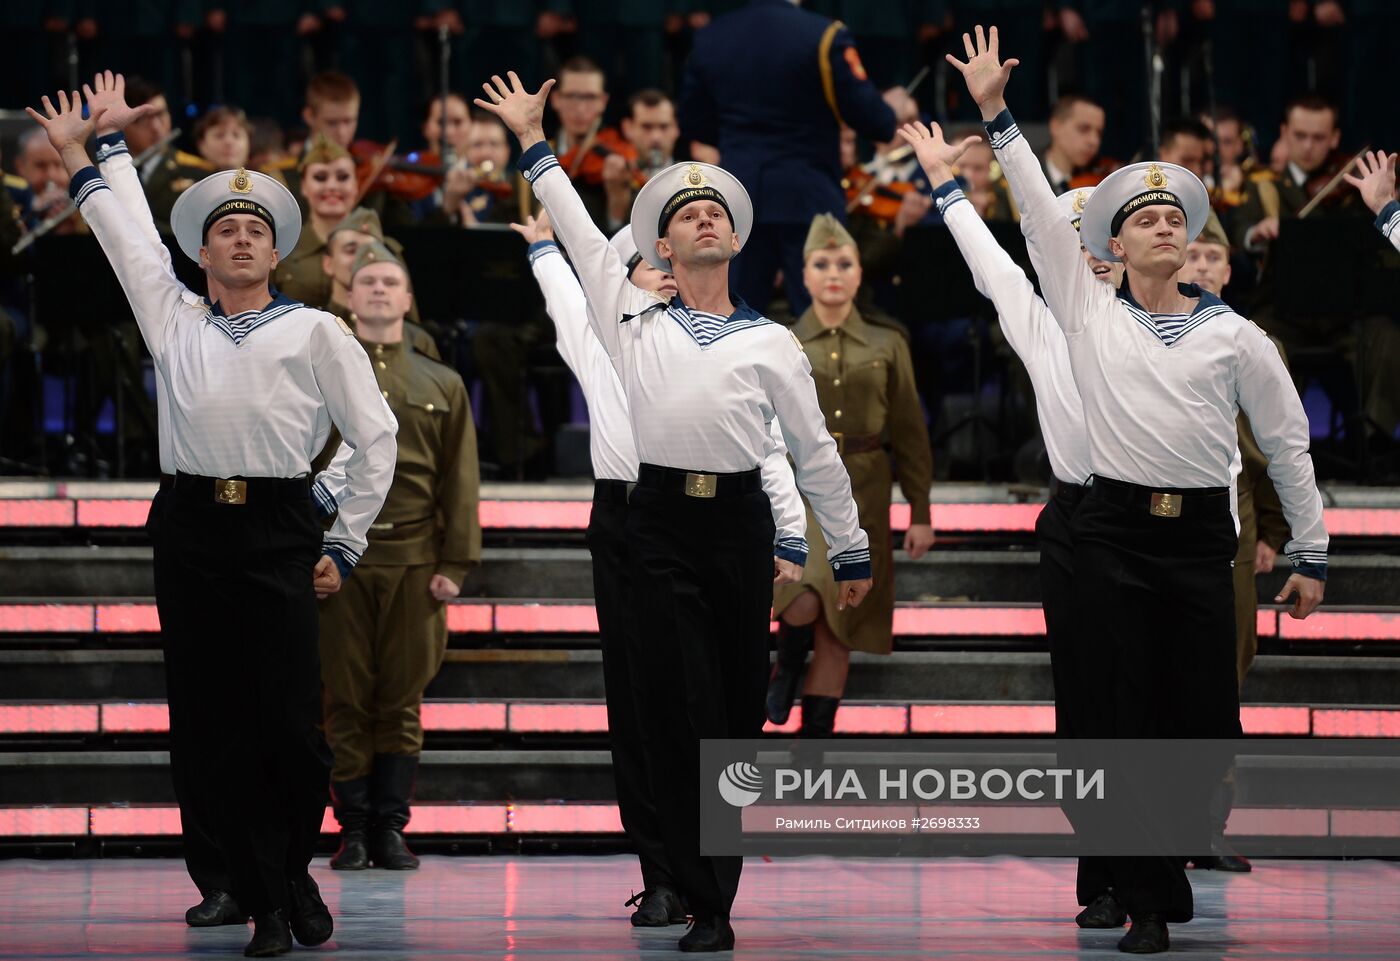 Фестиваль "Армия России"